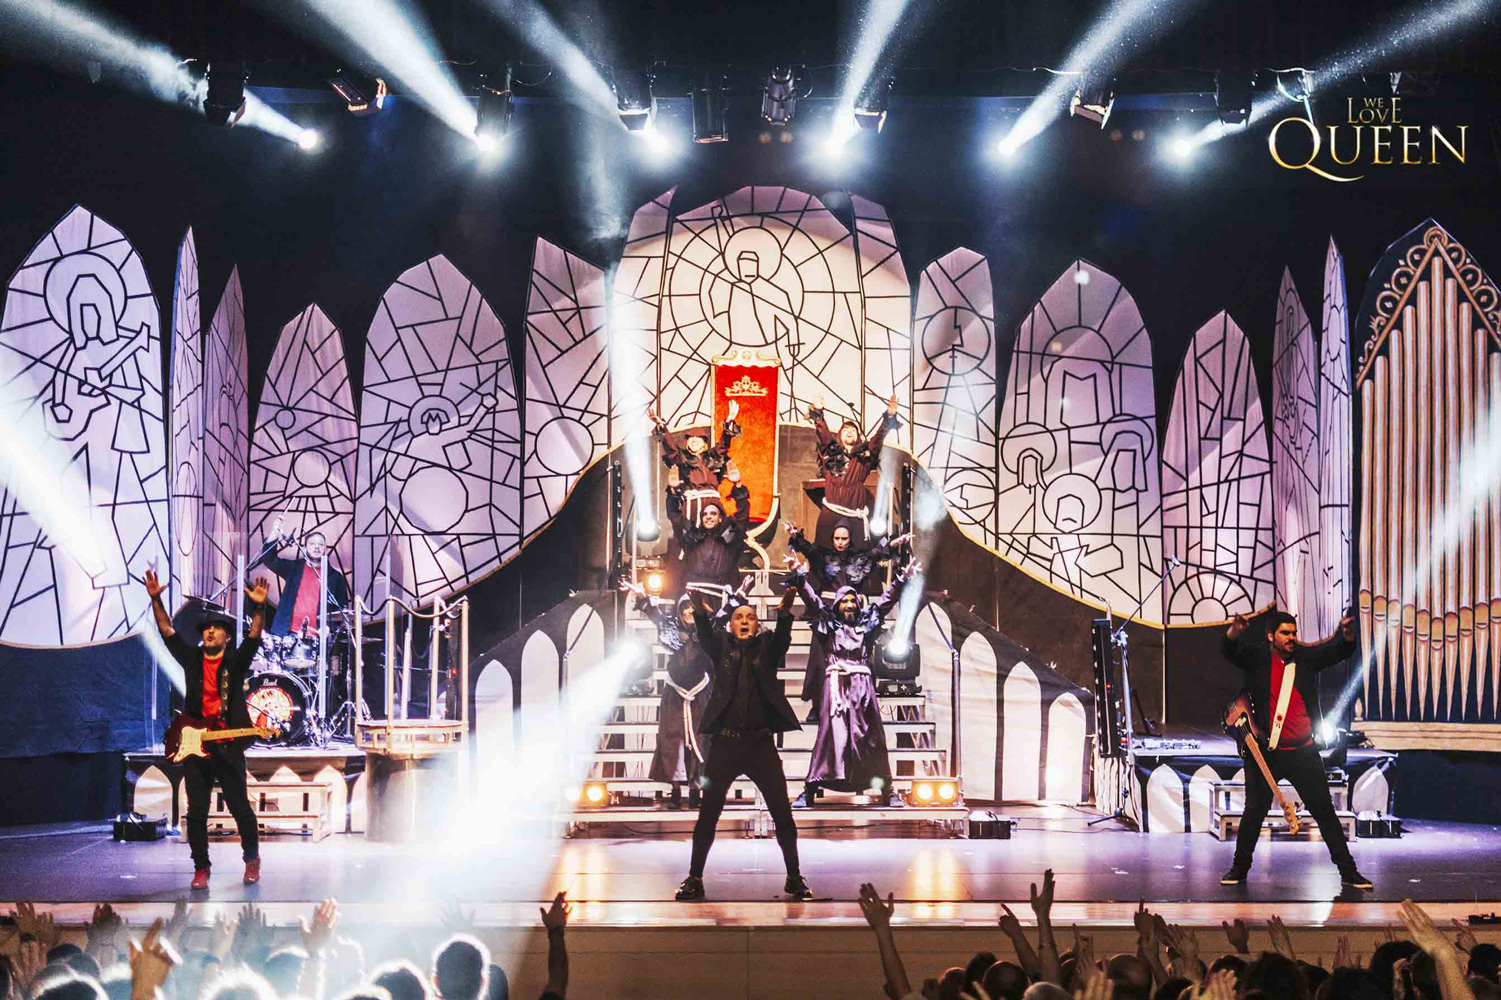 El espectáculo We love Queen homenajea a la mítica banda británica